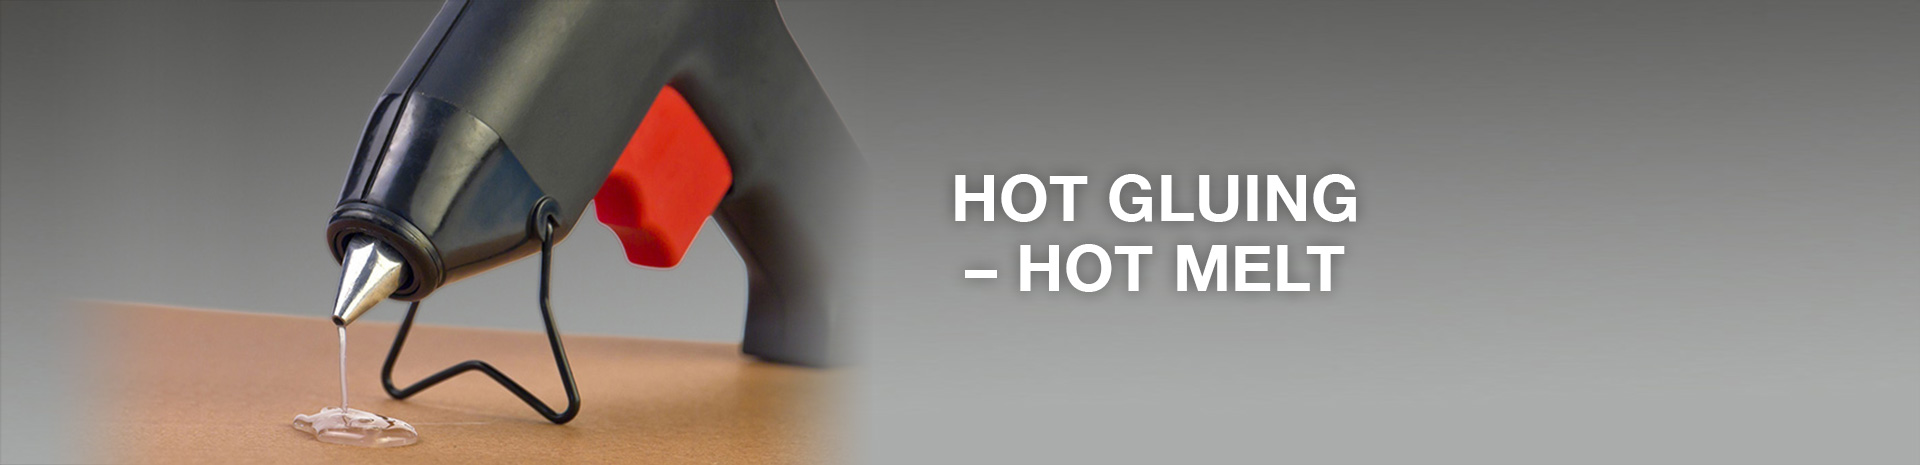 Hot gluing – hot melt